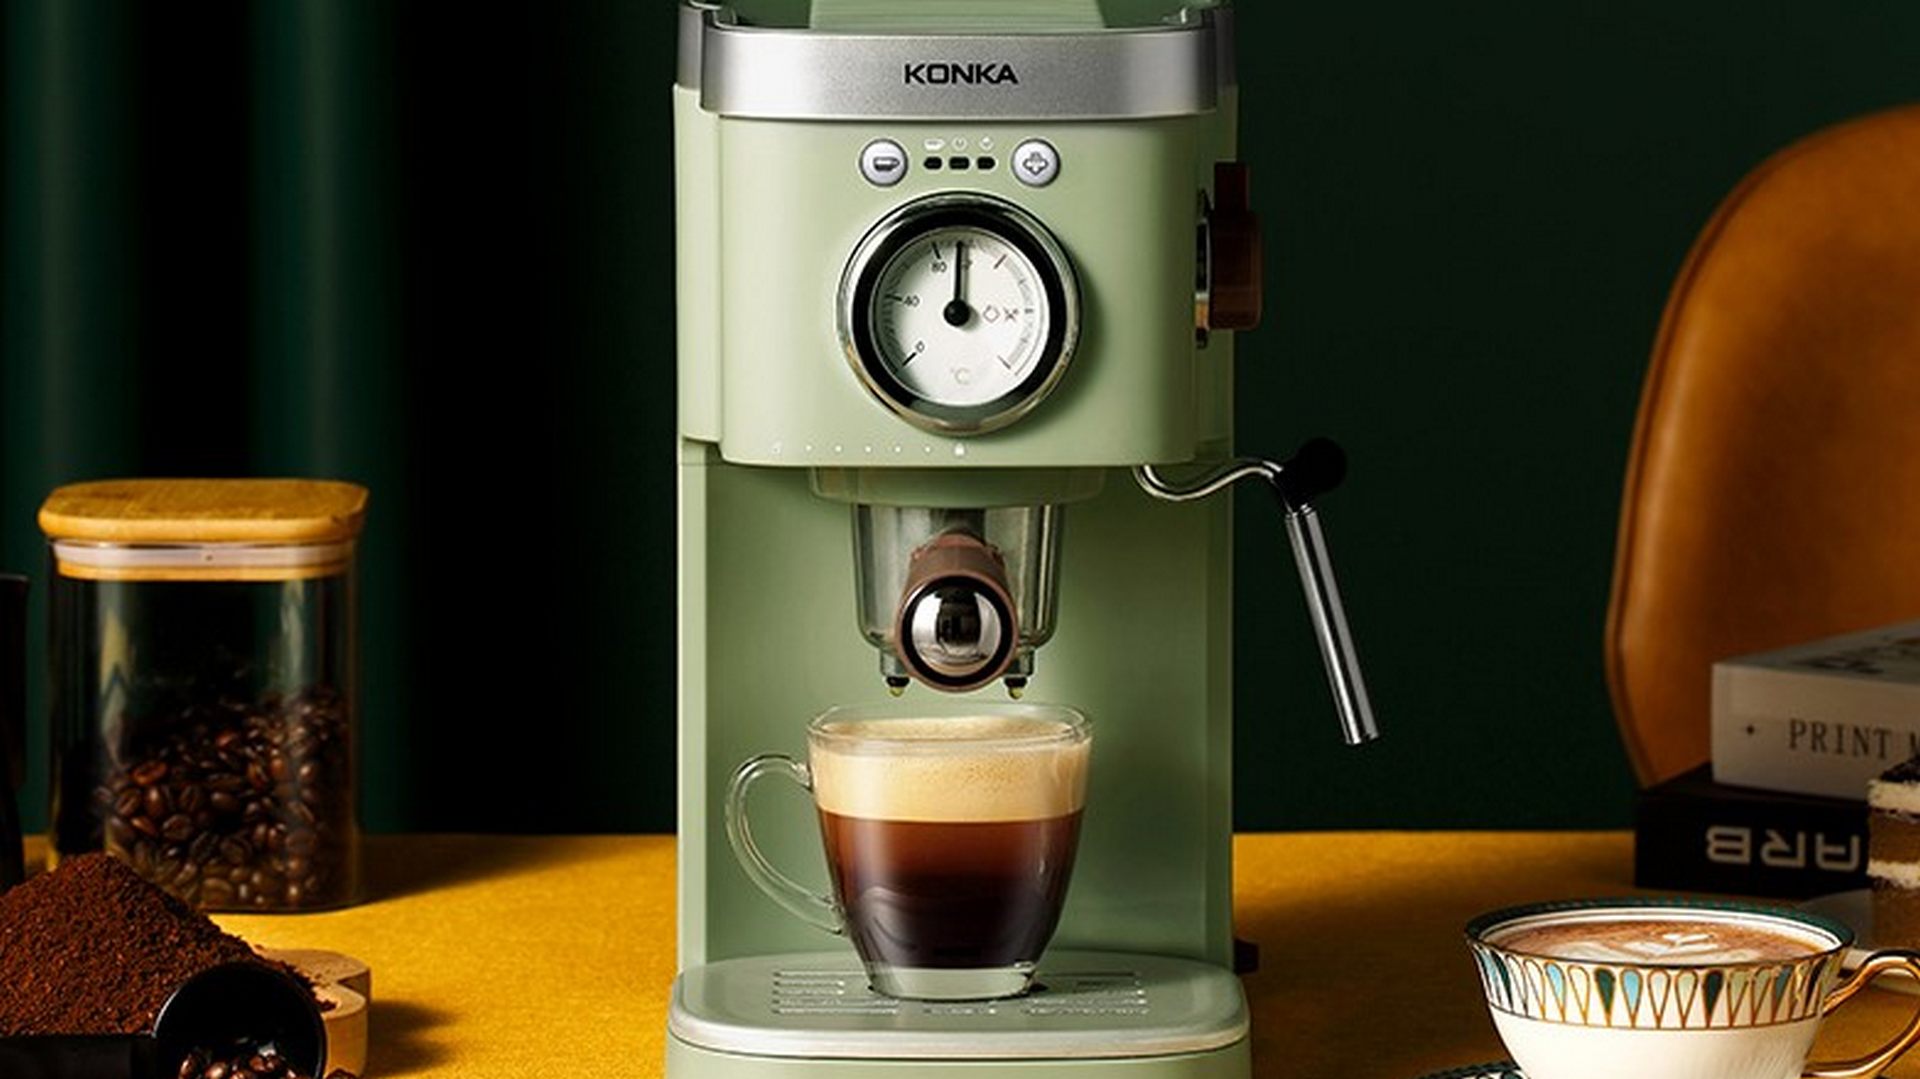 La macchina da caffè KONKA in offerta è retrò ma solo nel design! 